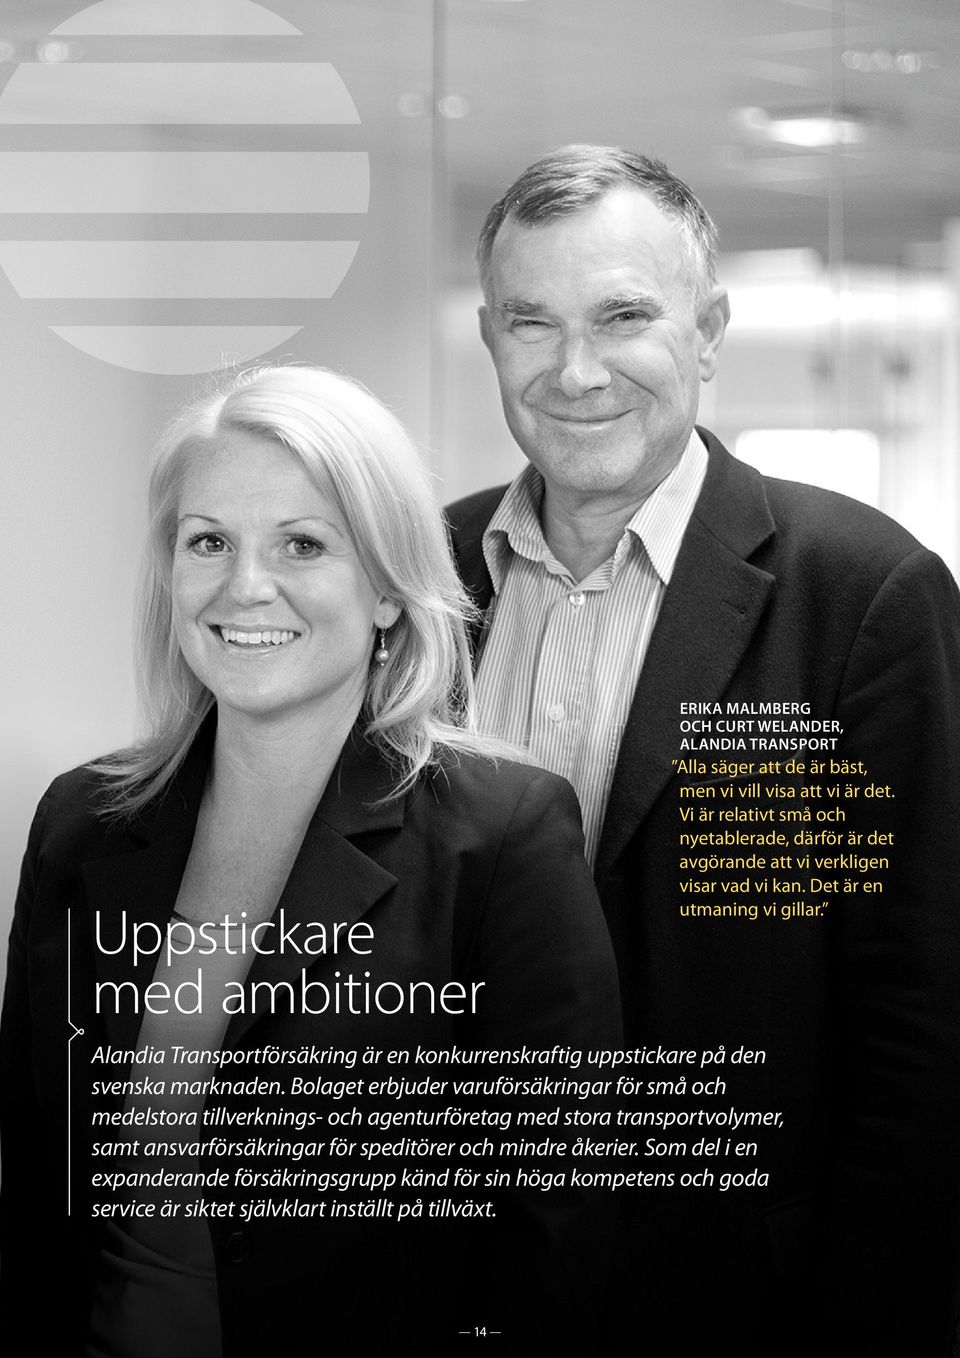 Alandia Transportförsäkring är en konkurrenskraftig uppstickare på den svenska marknaden.